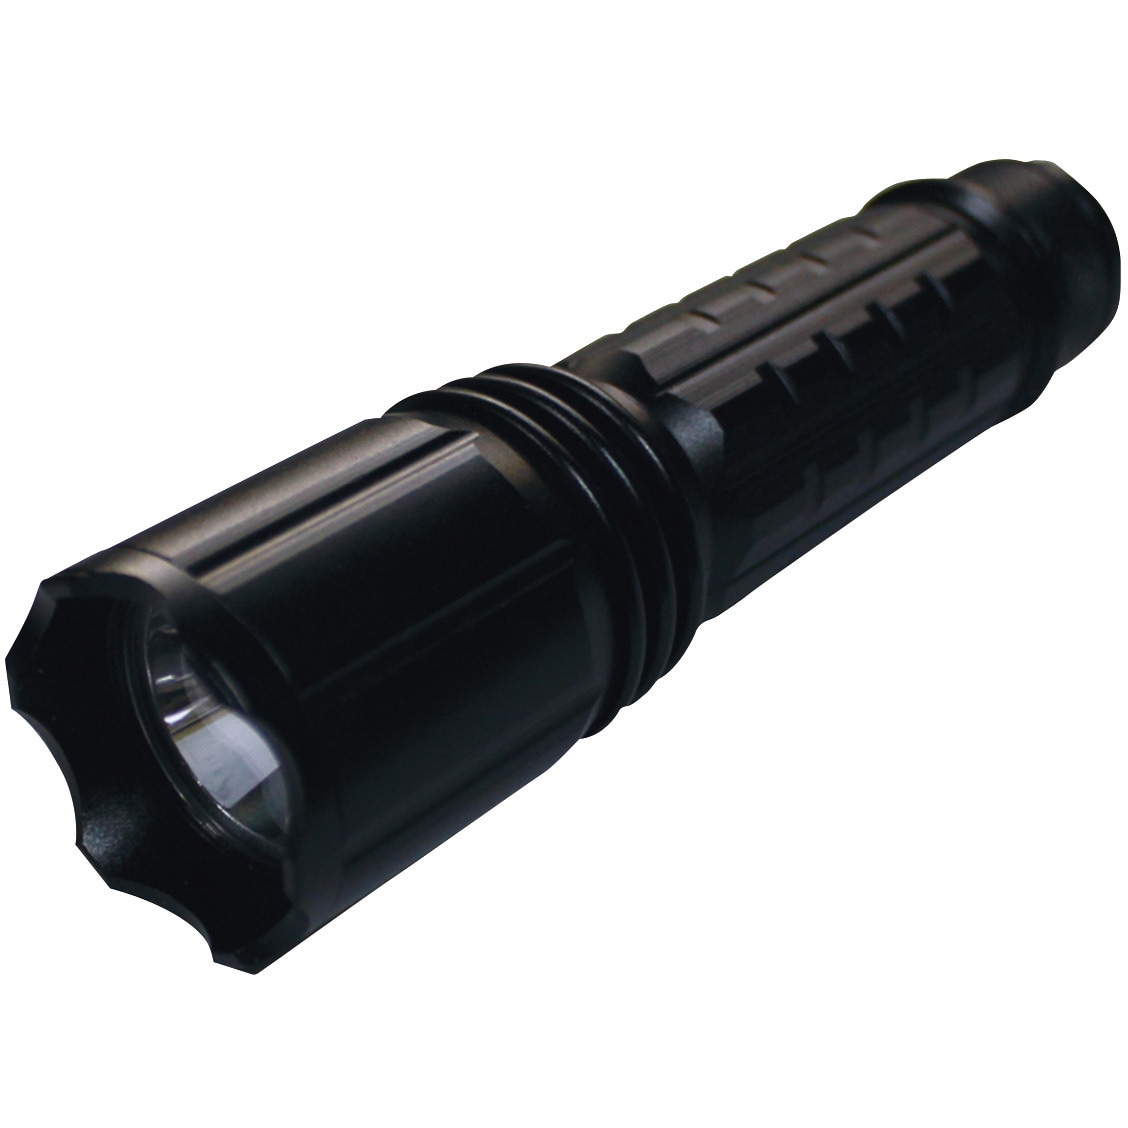 UV-SU395-01RB Hydrangea ブラックライト 高出力(ノーマル照射)充電池タイプ 1個 Hydrangea  【通販サイトMonotaRO】